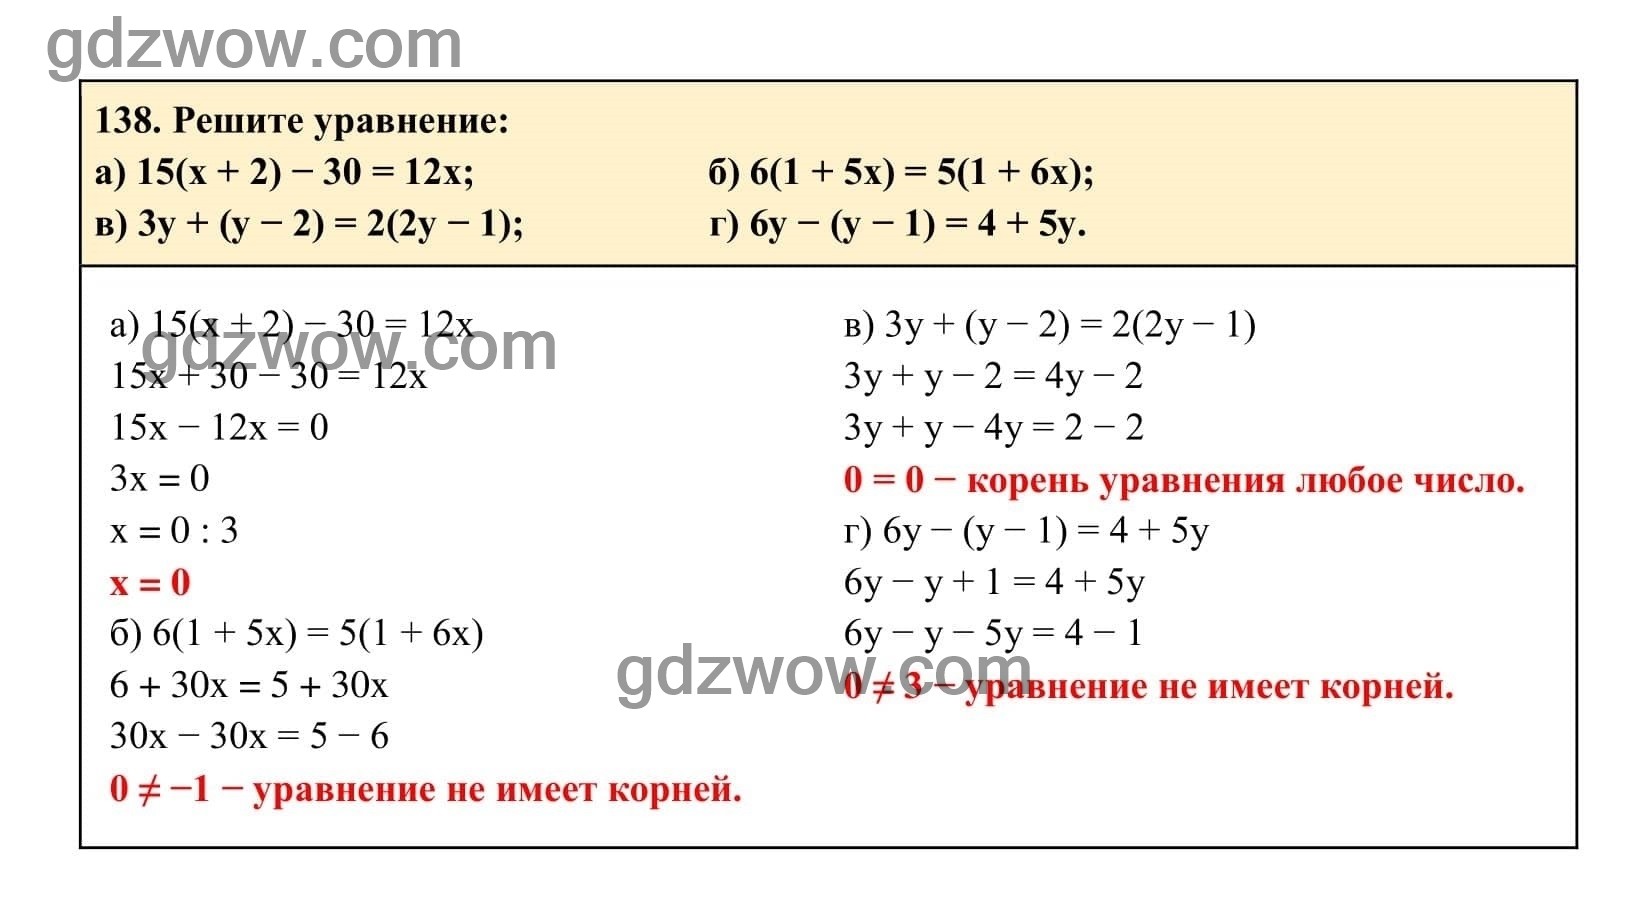 Упражнение 138 - ГДЗ по Алгебре 7 класс Учебник Макарычев (решебник) - GDZwow